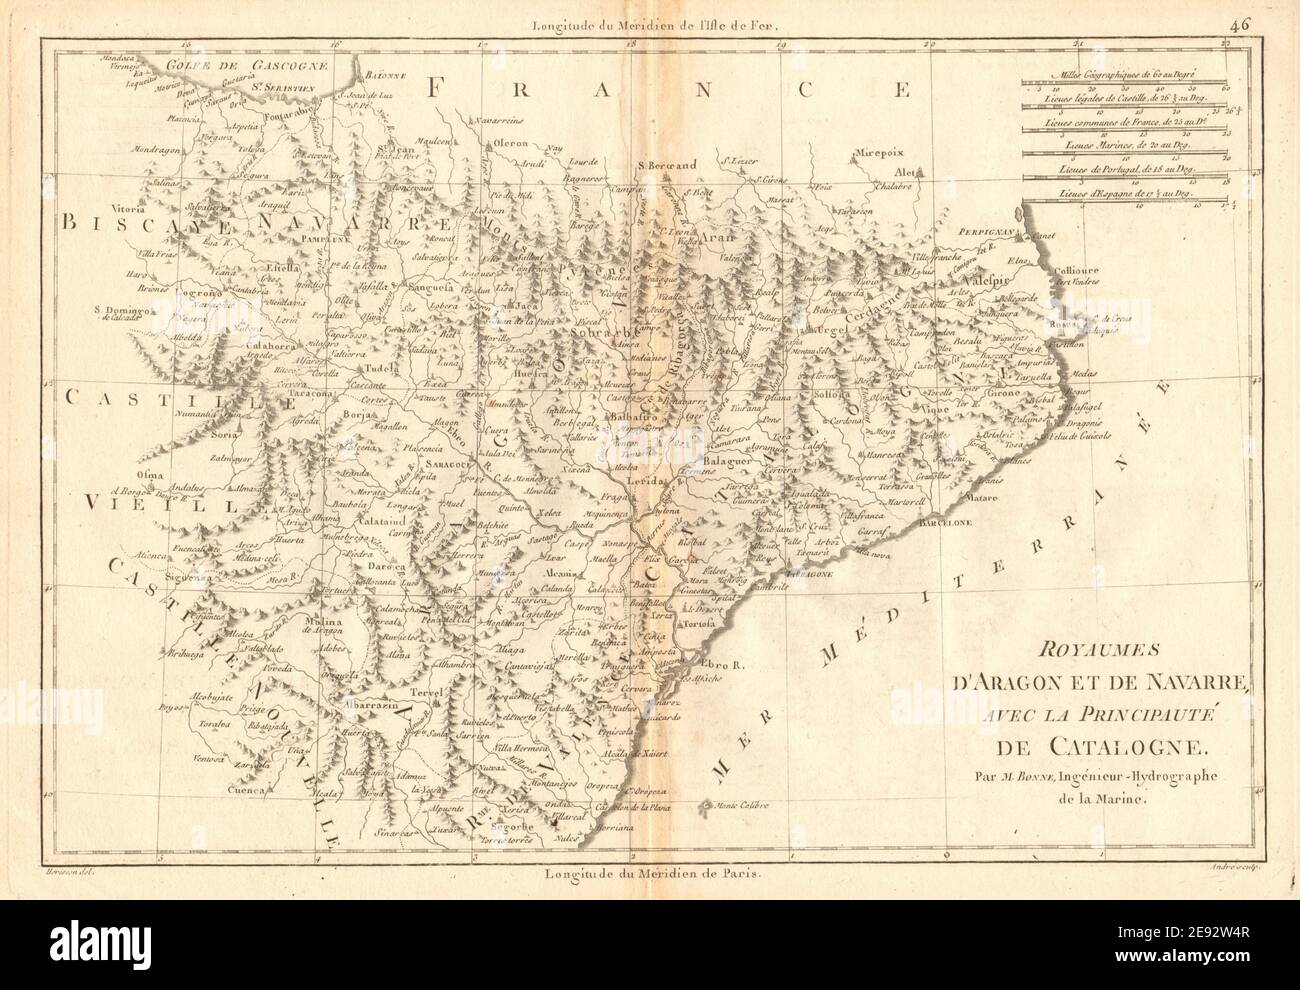 Royaumes d’Aragon et de Navarre avec… Catalogne. Catalogne Espagne. BONNE 1787 carte Banque D'Images